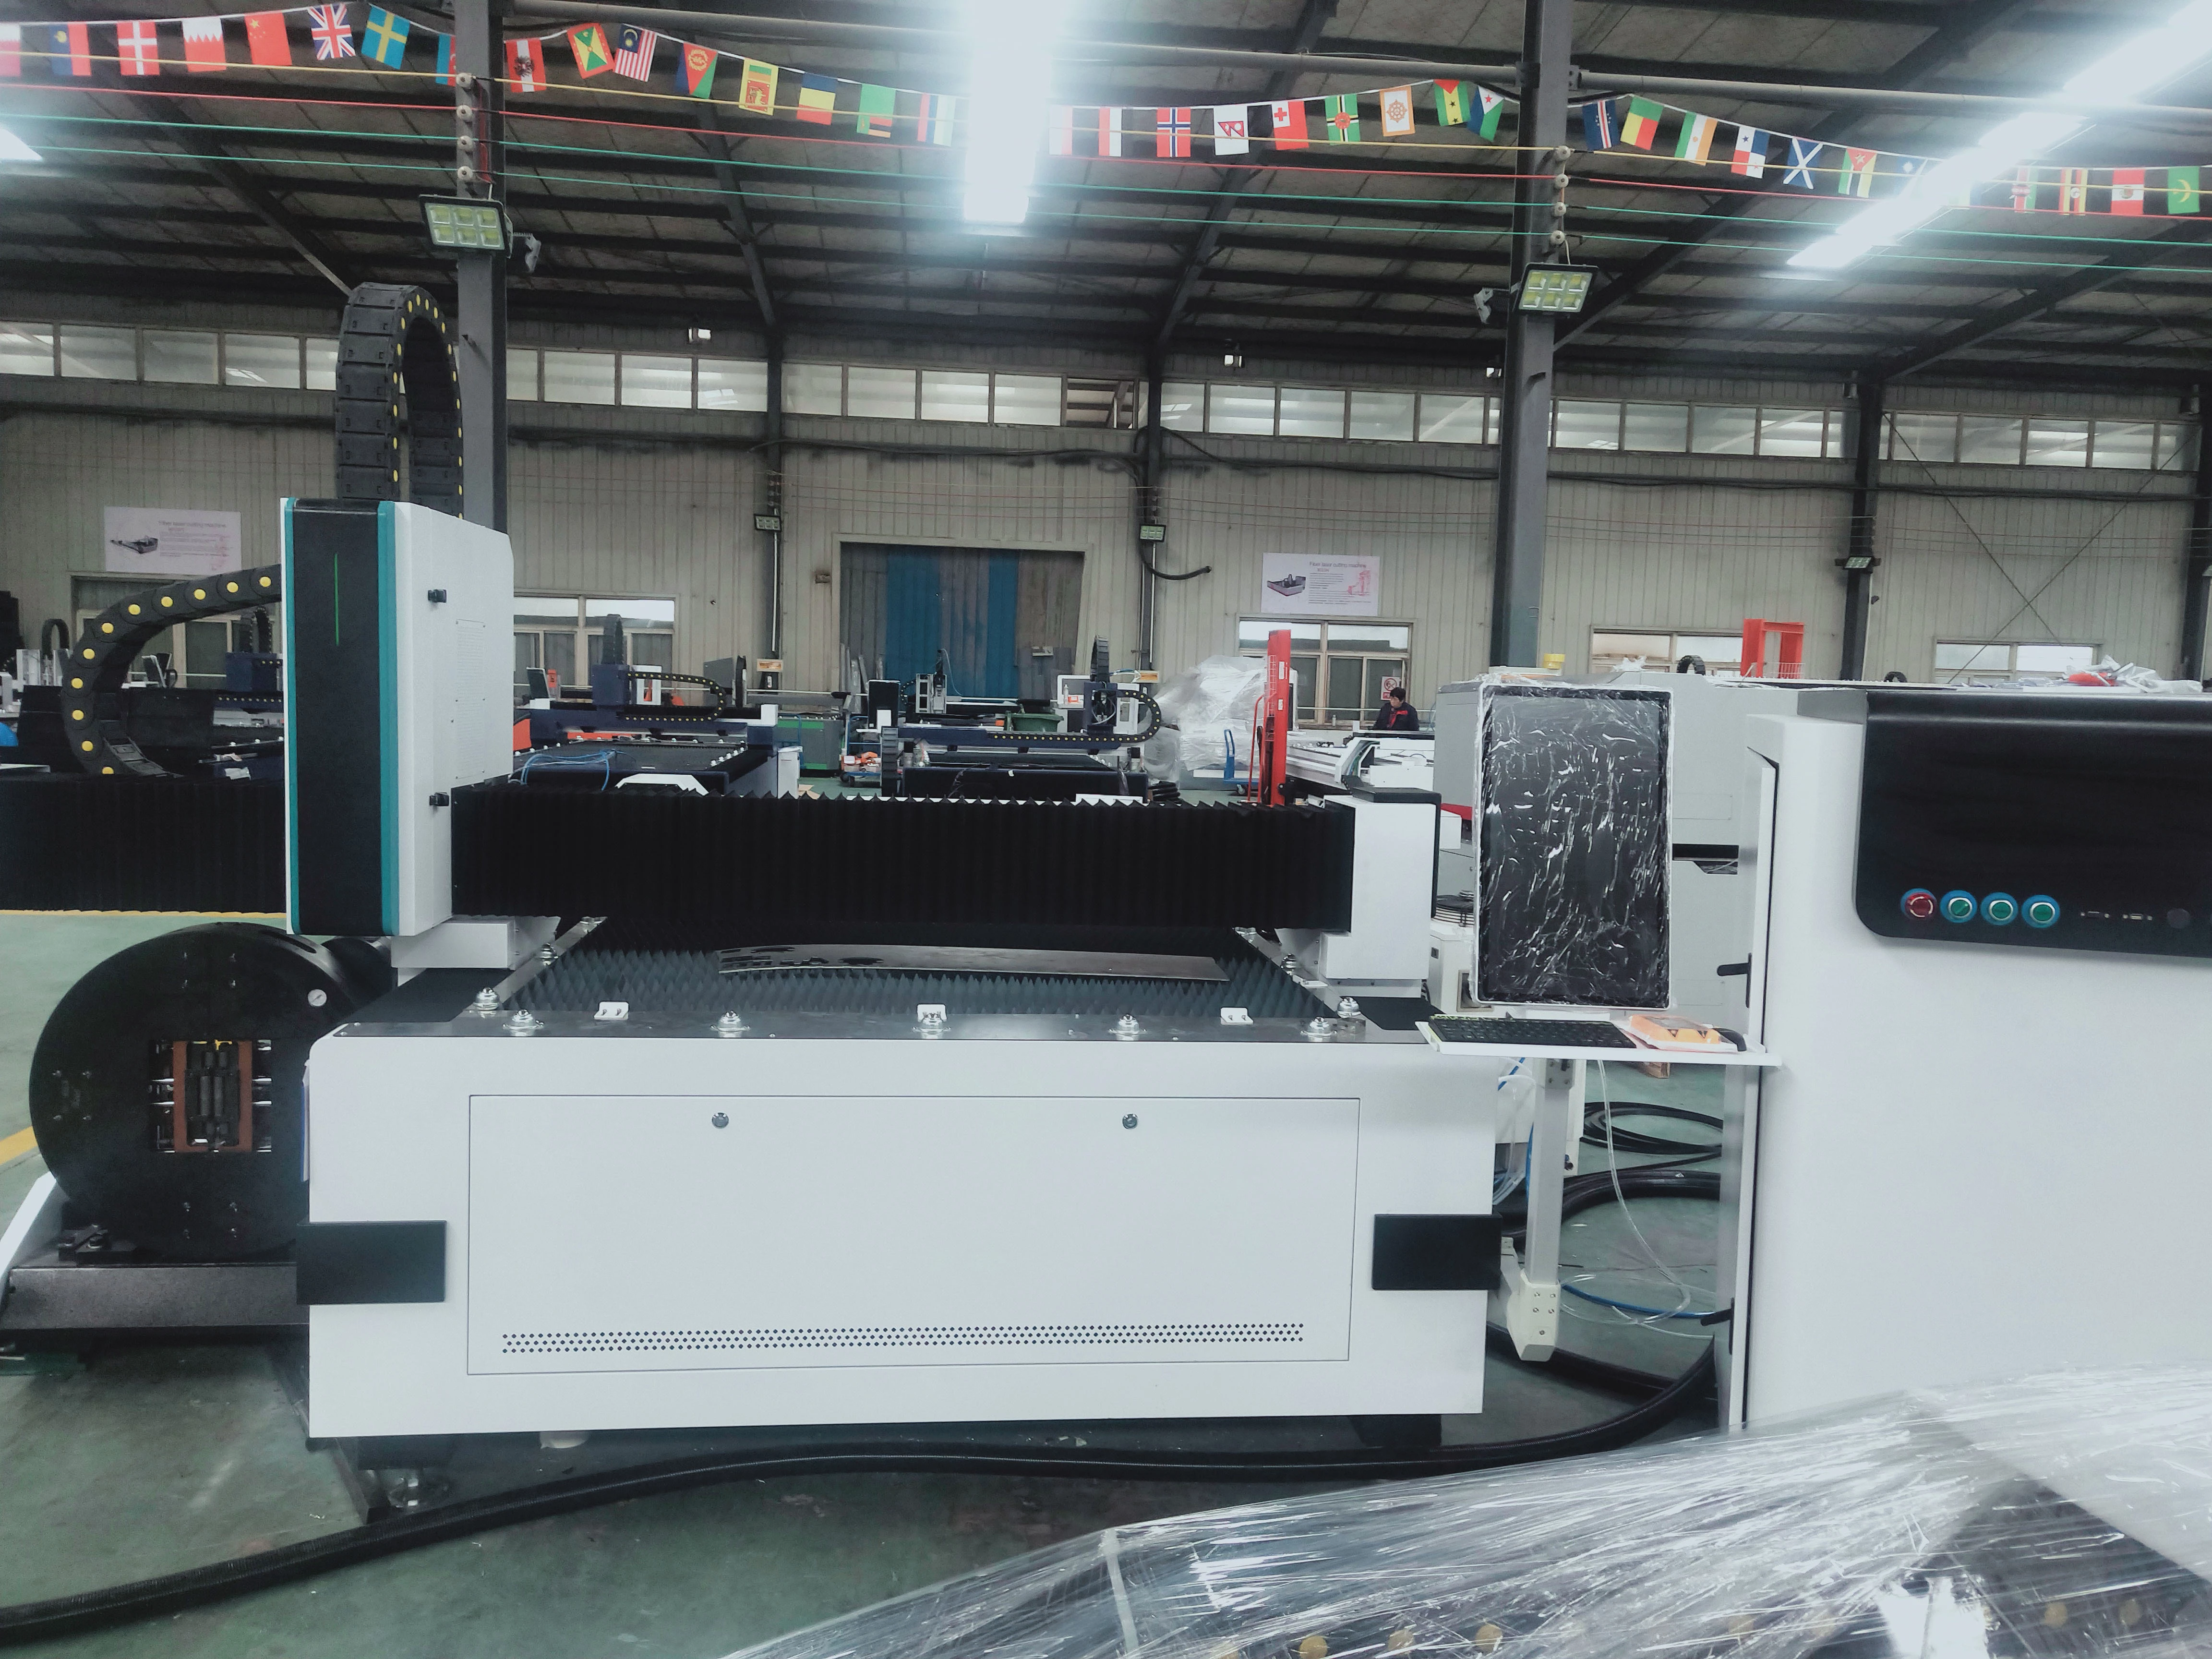 New type  stainless sheet metal fiber laser cutting machine price